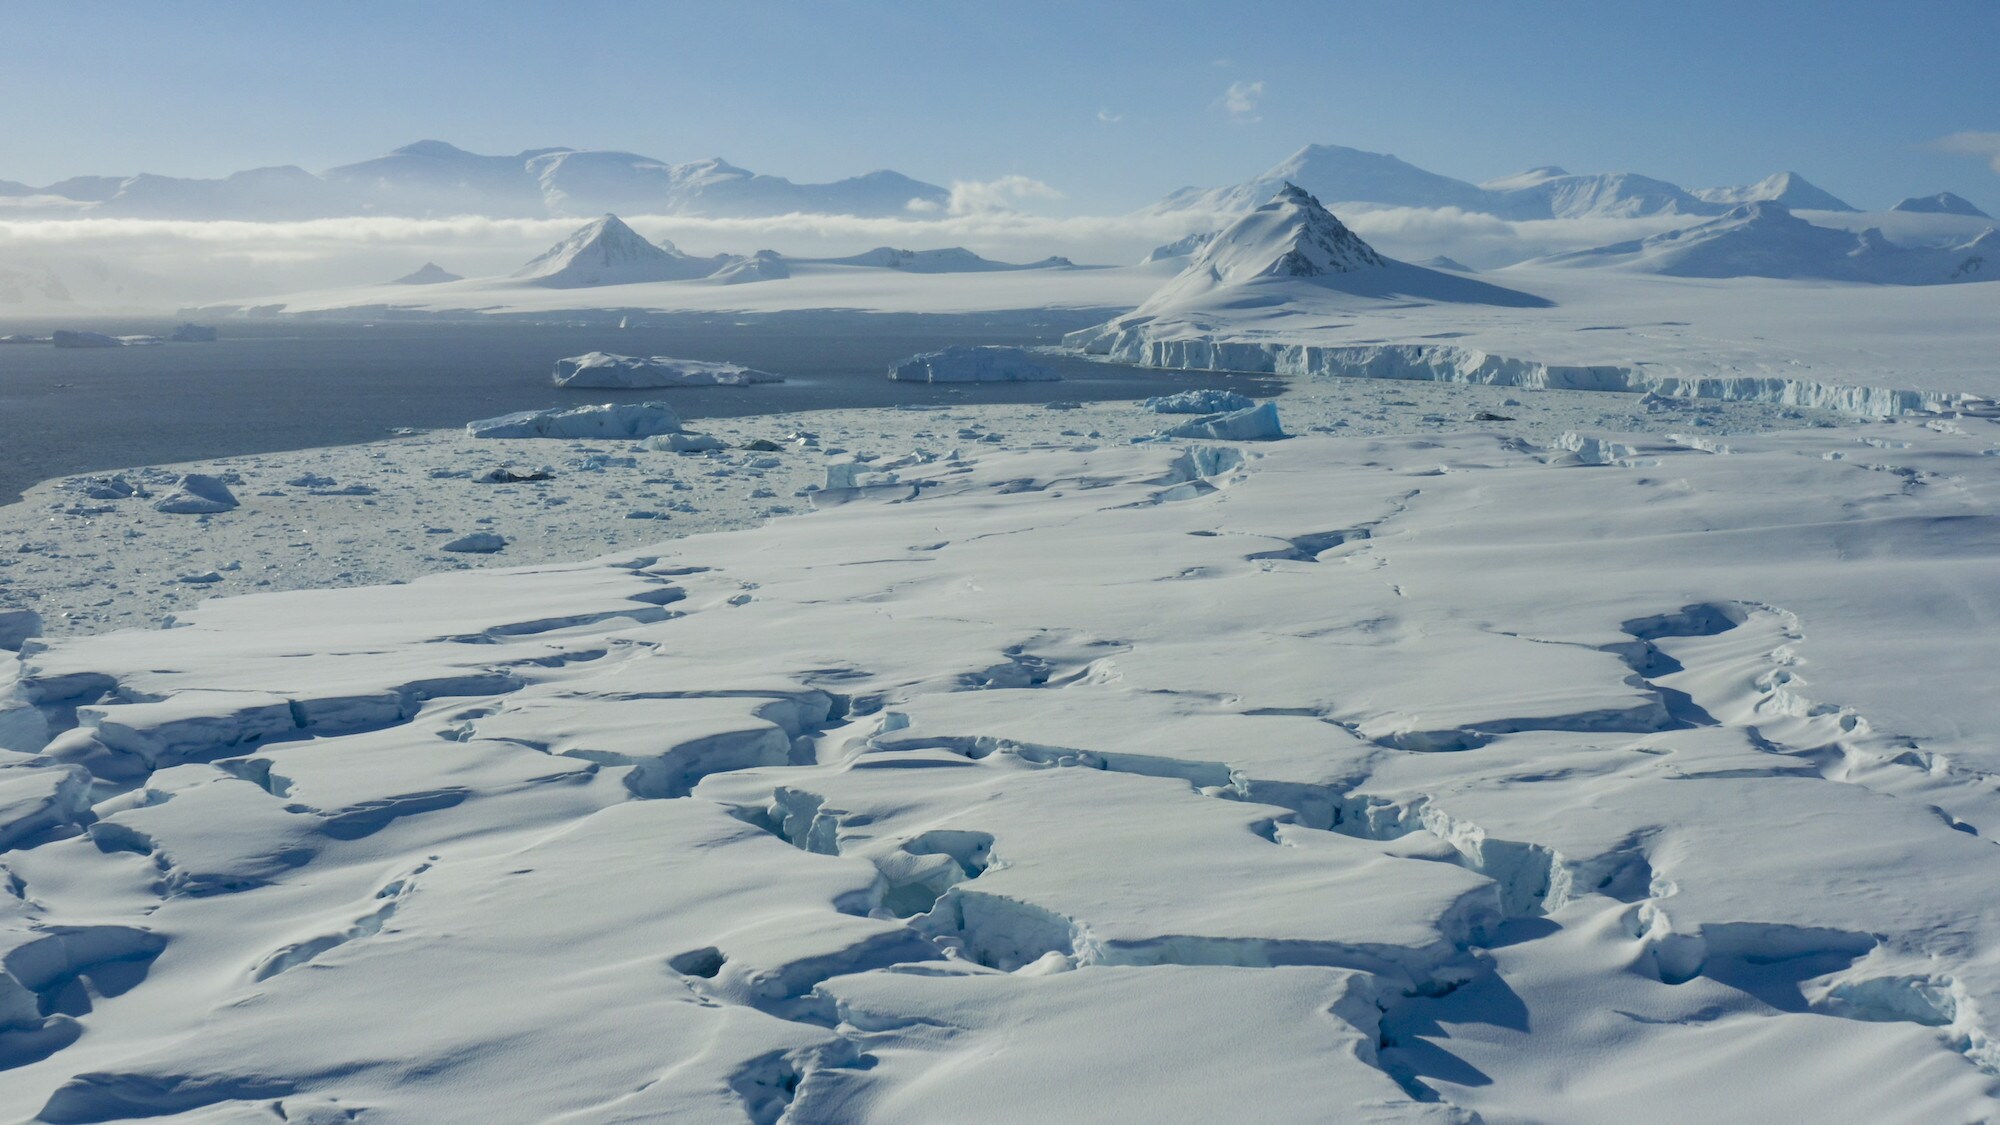 Ice flow in Antarctica. (credit: National Geographic for Disney+/Bertie Gregory)